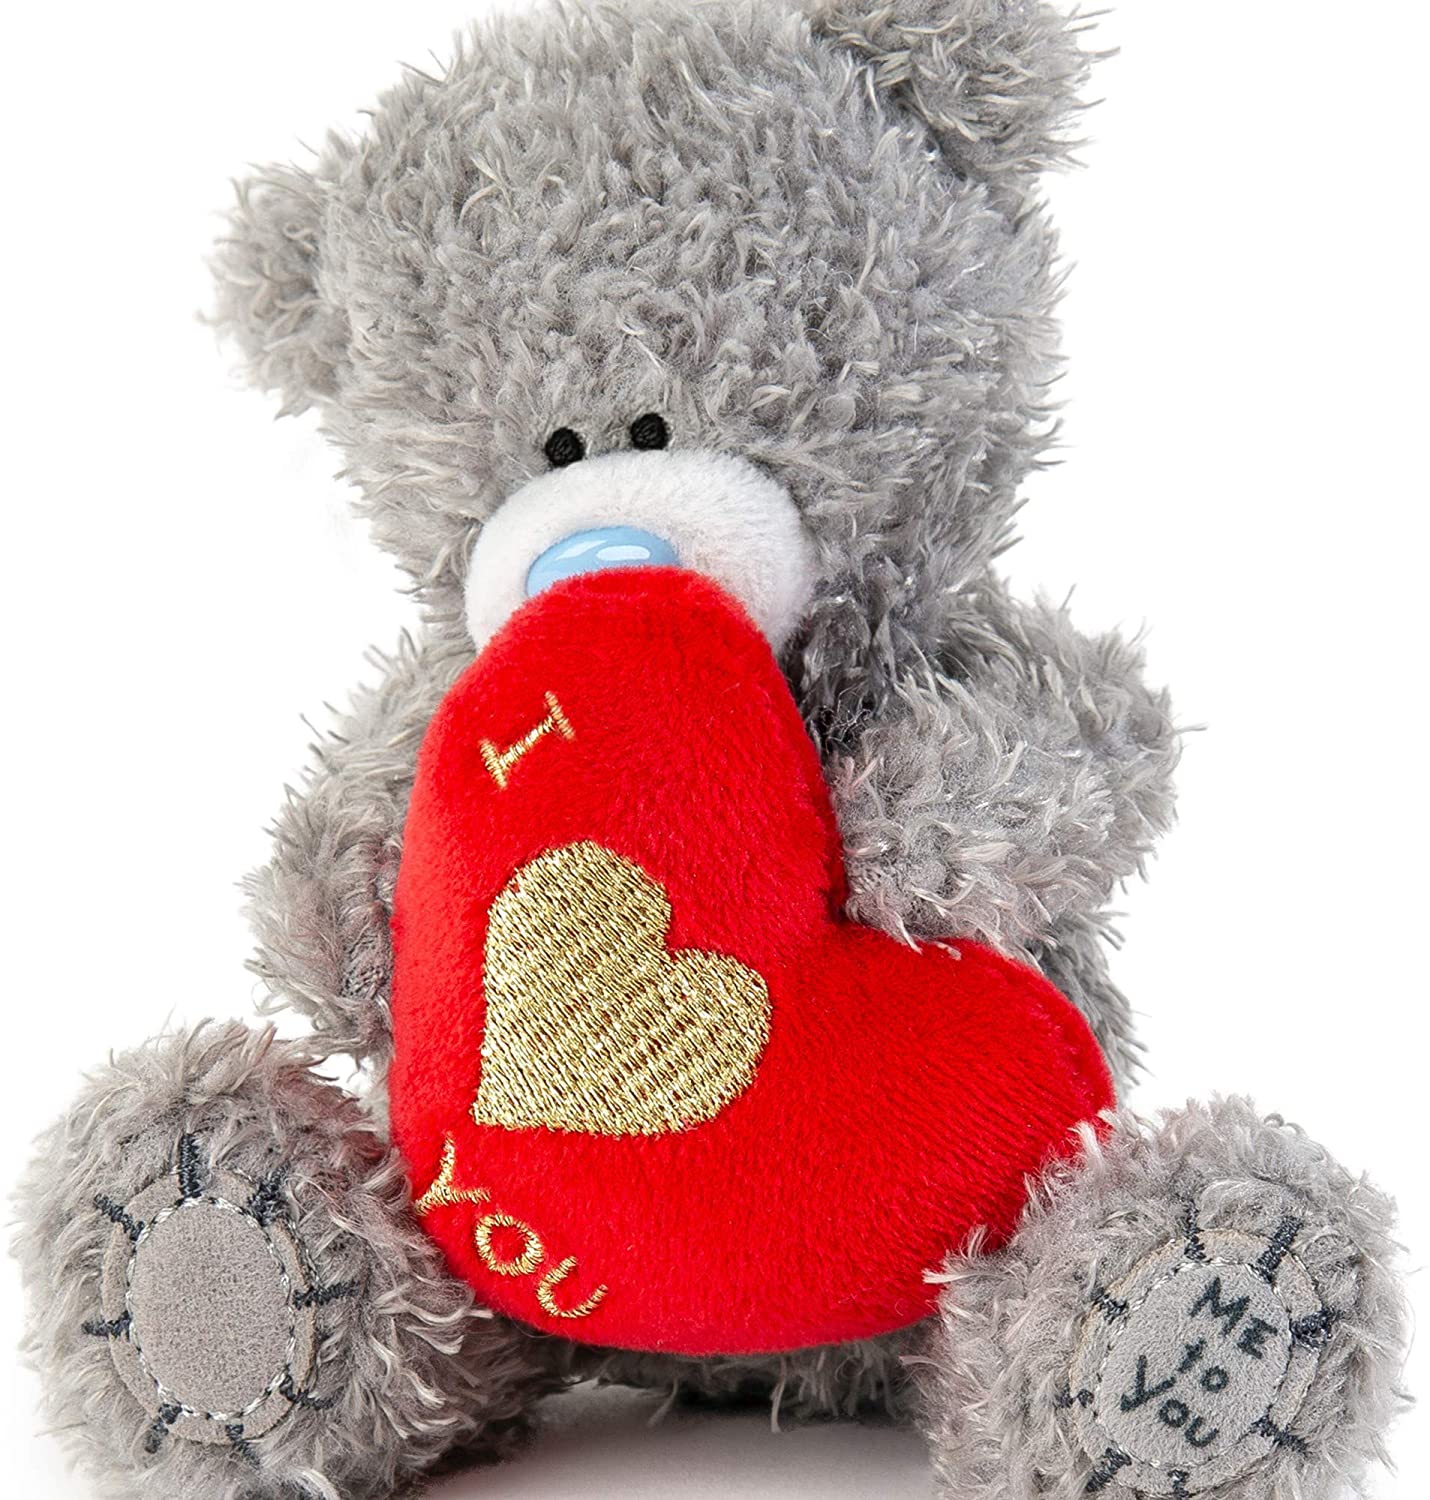 Tatty Teddy with I Love You Heart - Teddy Bear